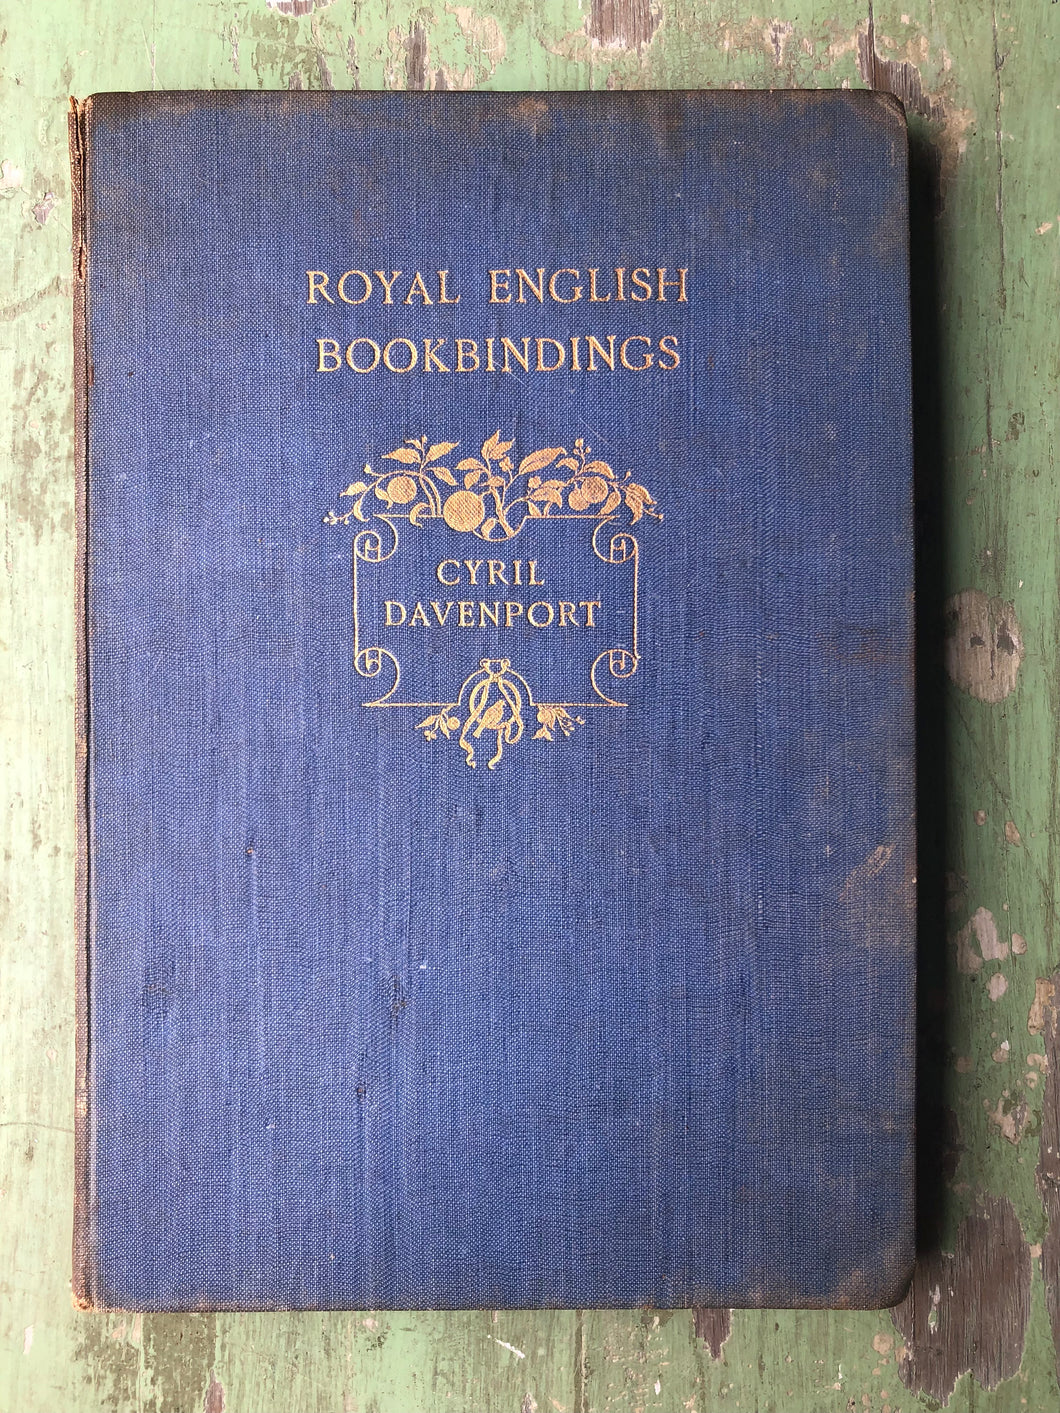 Royal English Bookbindings. by Cyril Davenport